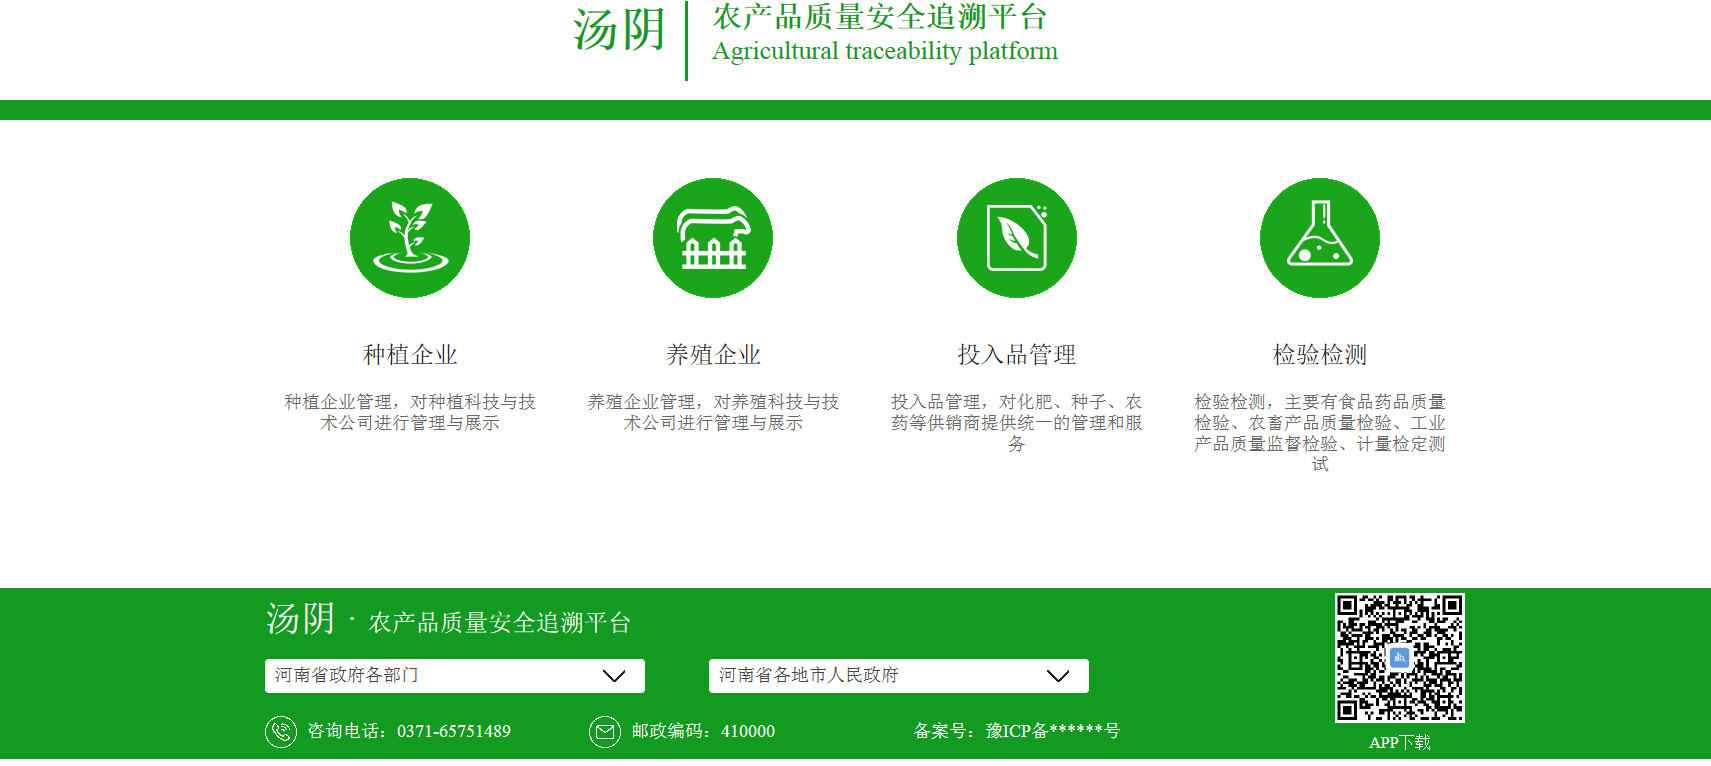 汤阴县农产品质量安全溯源平台